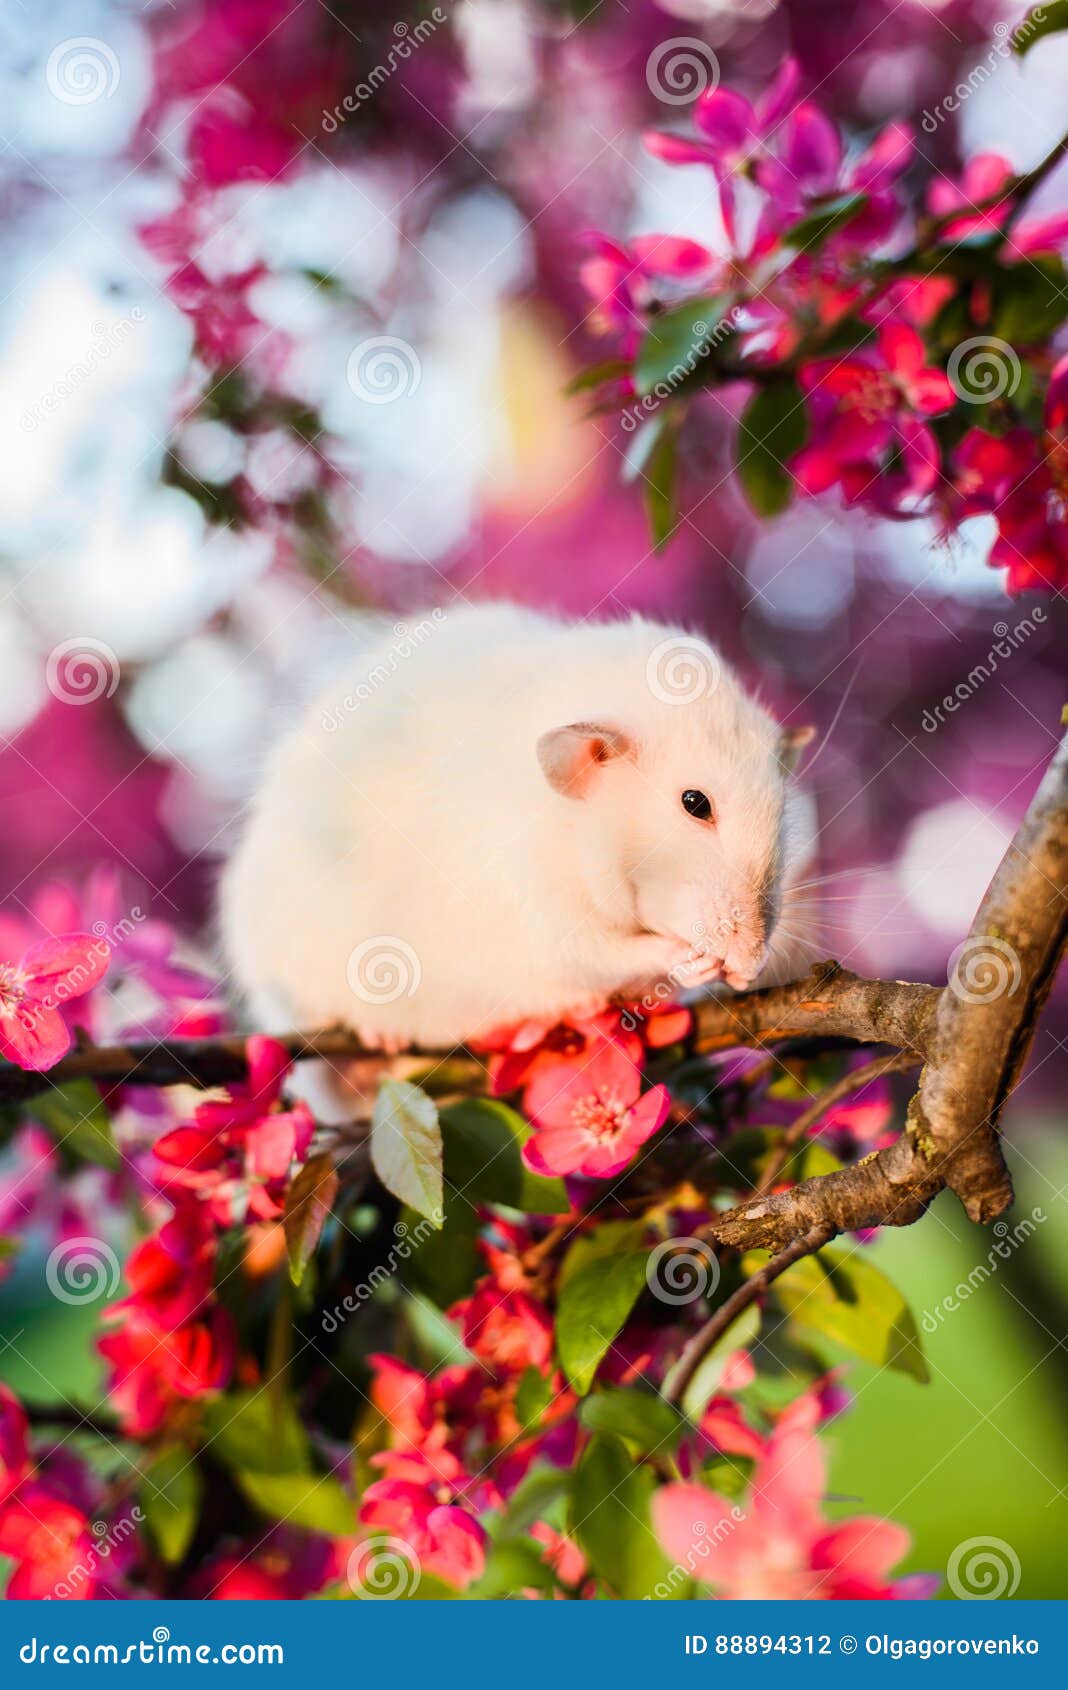 Schüchterne fantastische Ratte, die in der Blüte des rosafarbenen Apfels sich wäscht sitzt. Schüchterne fantastische Ratte, die in der herrlichen Frühlingsapfelblüte bei dem Sonnenuntergang sich wäscht sitzt